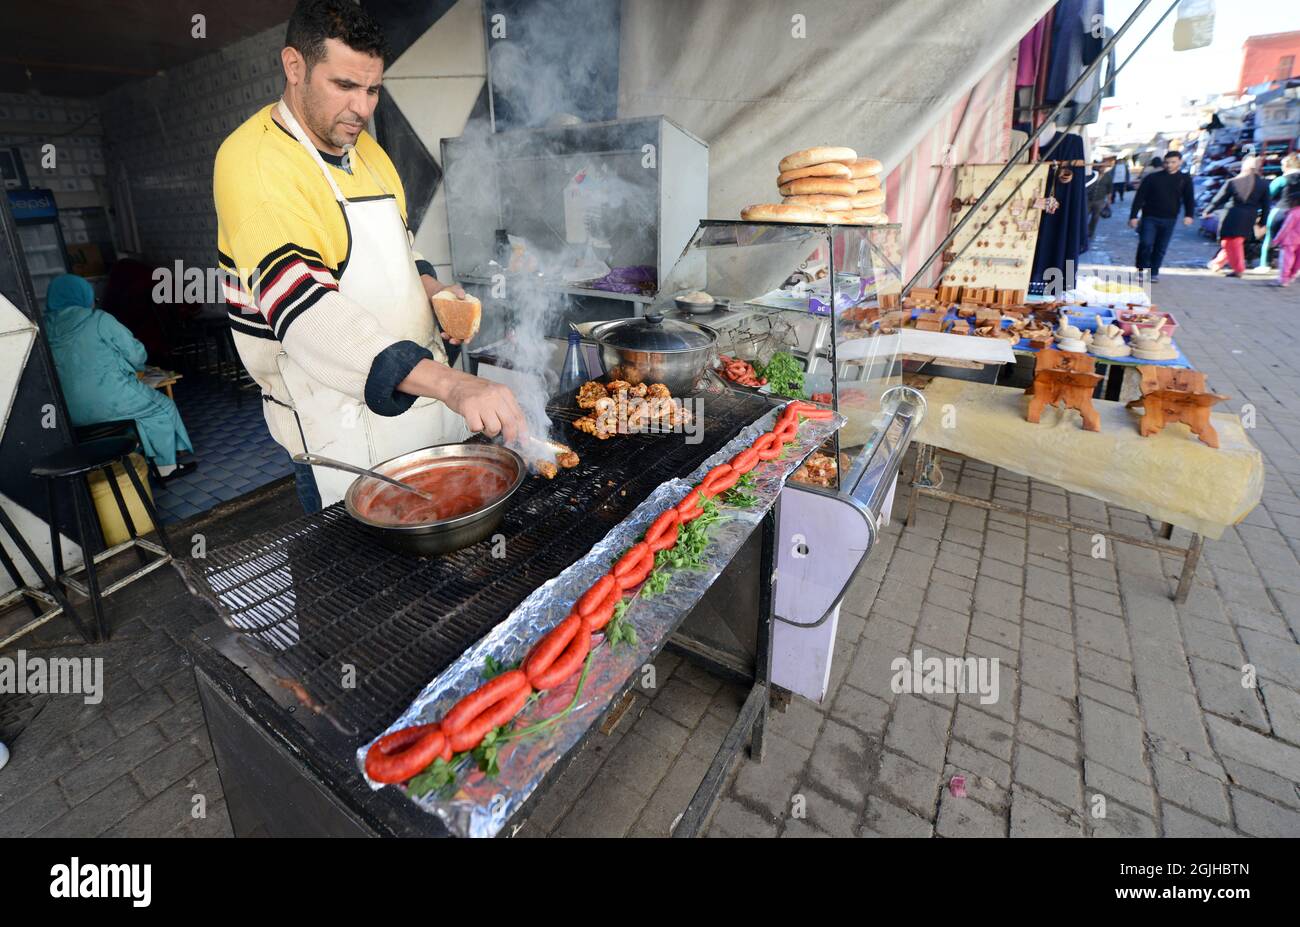 Un uomo marocchino che grigliava carne e sauseges marocchini tradizionali in un piccolo ristorante nella medina di Salé, Marocco. Foto Stock